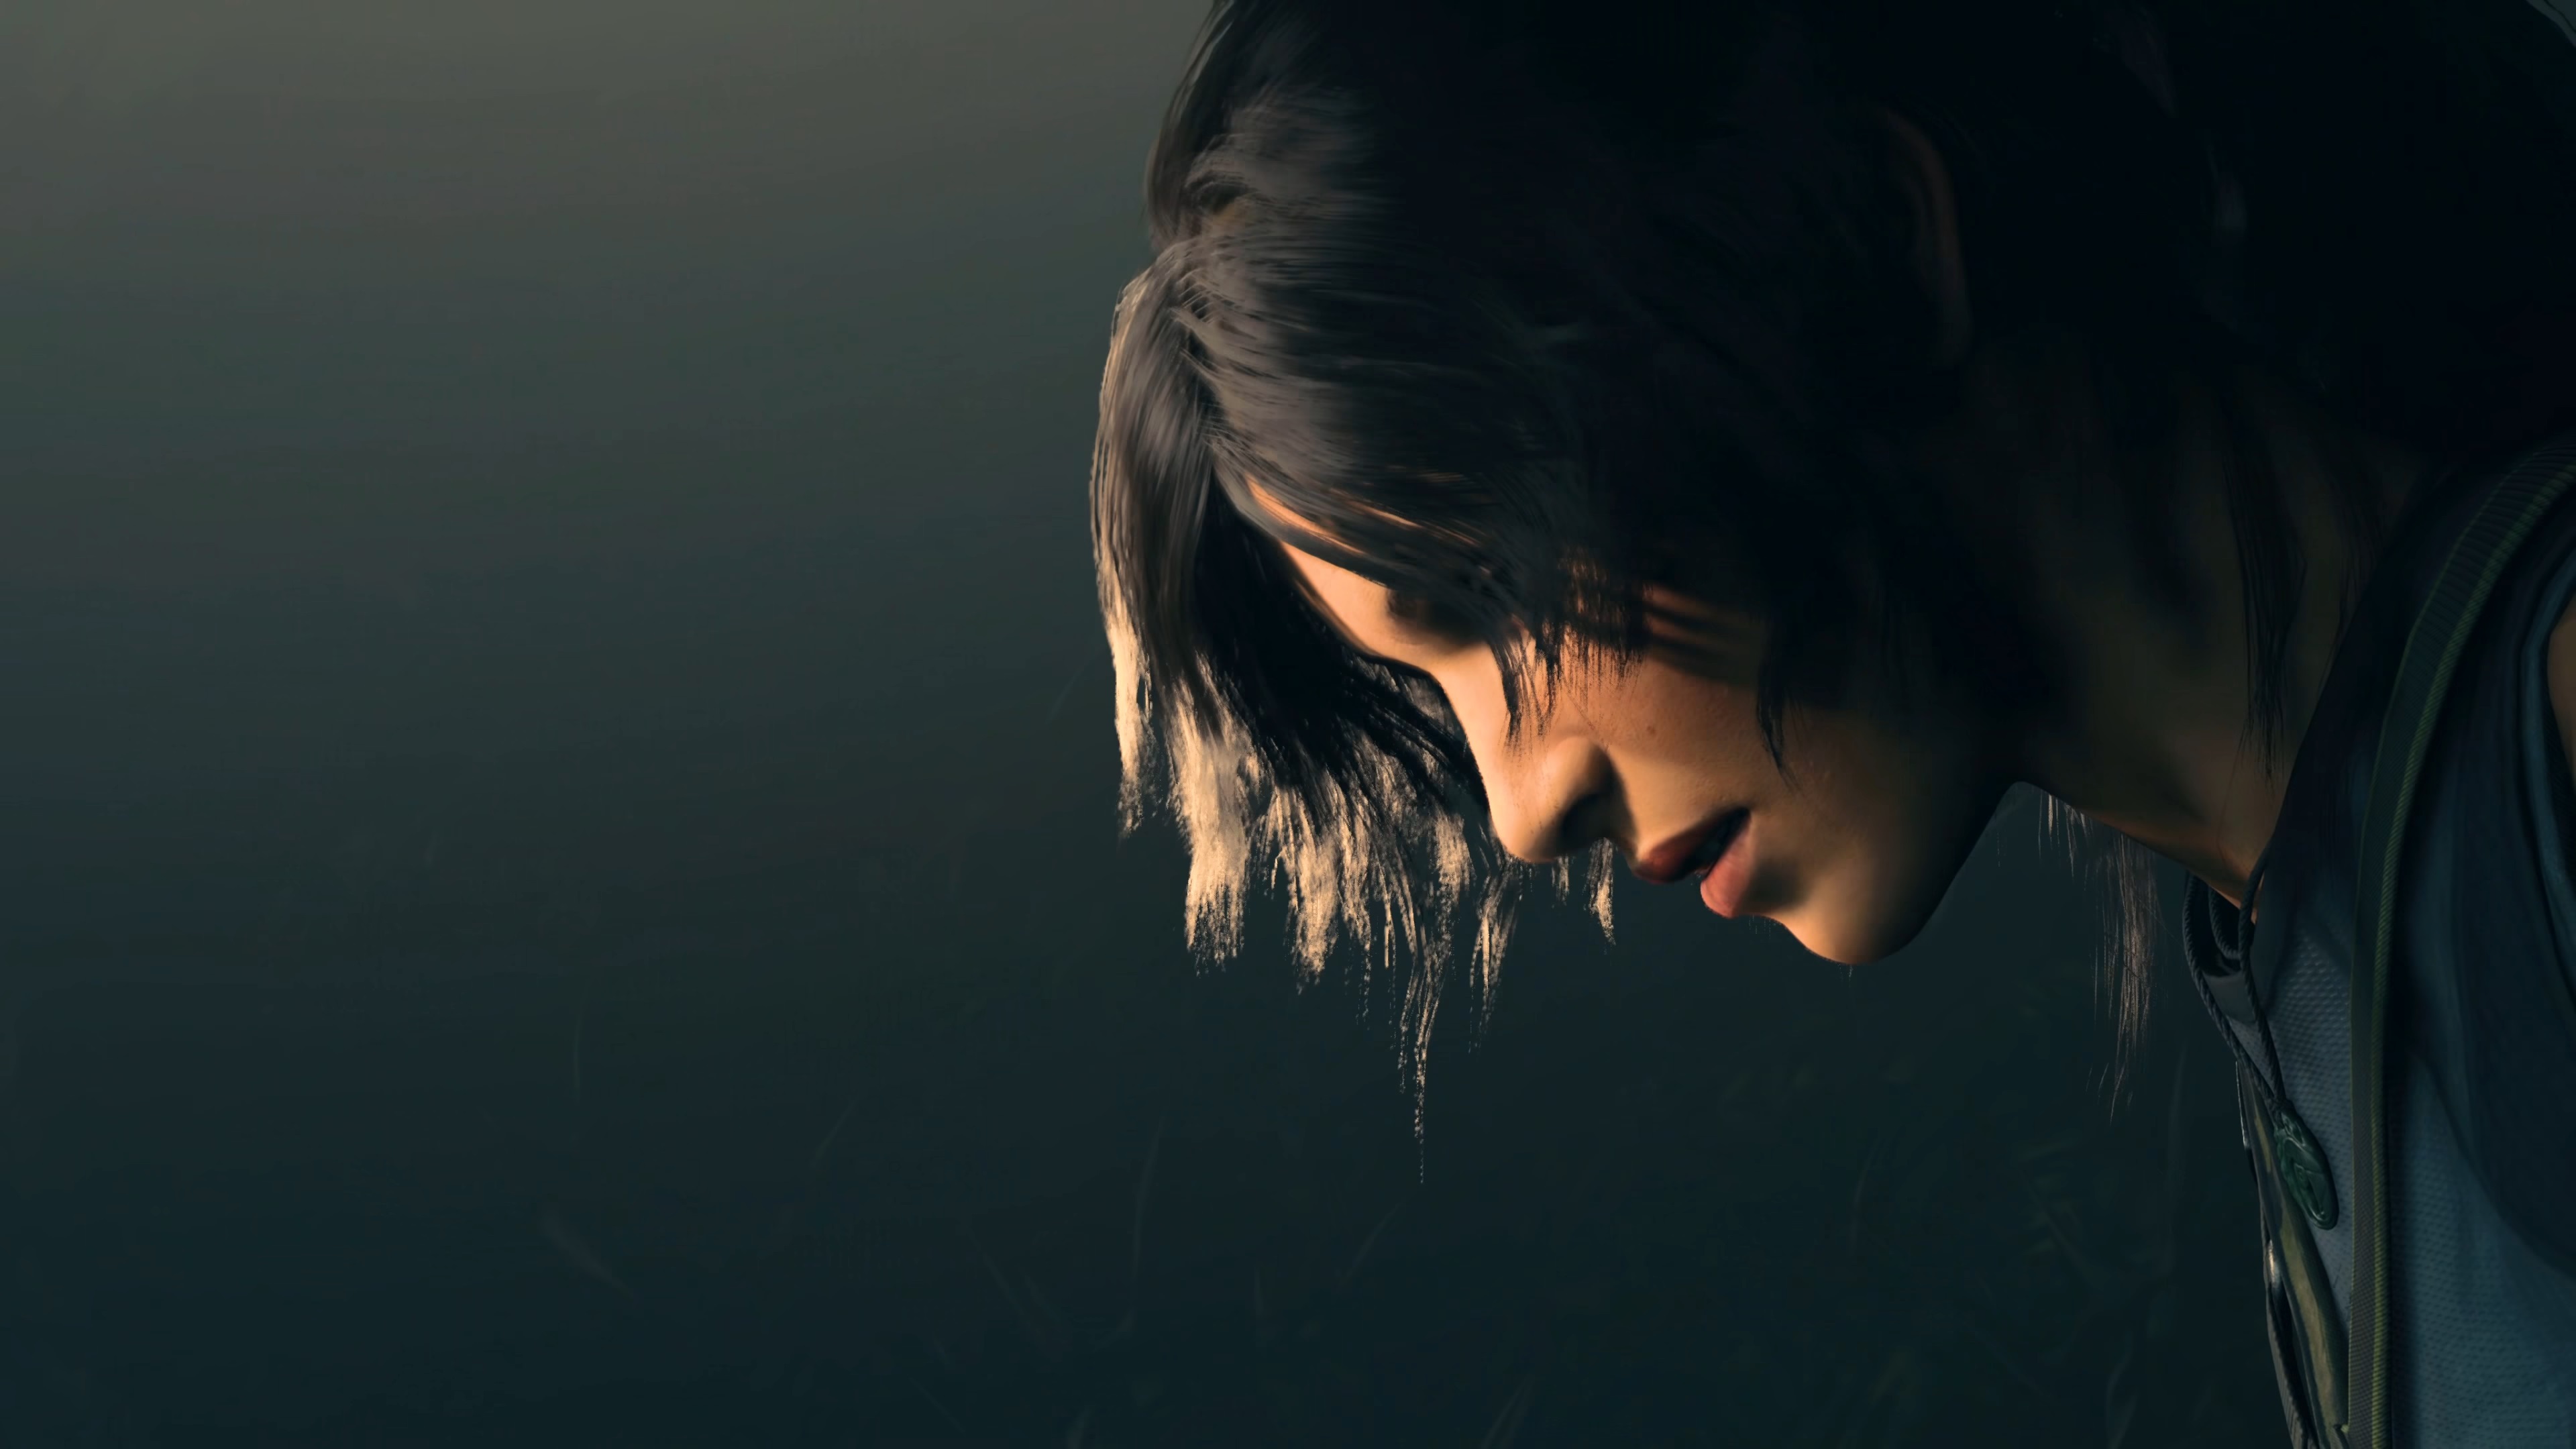 سی دی کی اریجینال استیم بازی Shadow Of The Tomb Raider - Definitive Edition